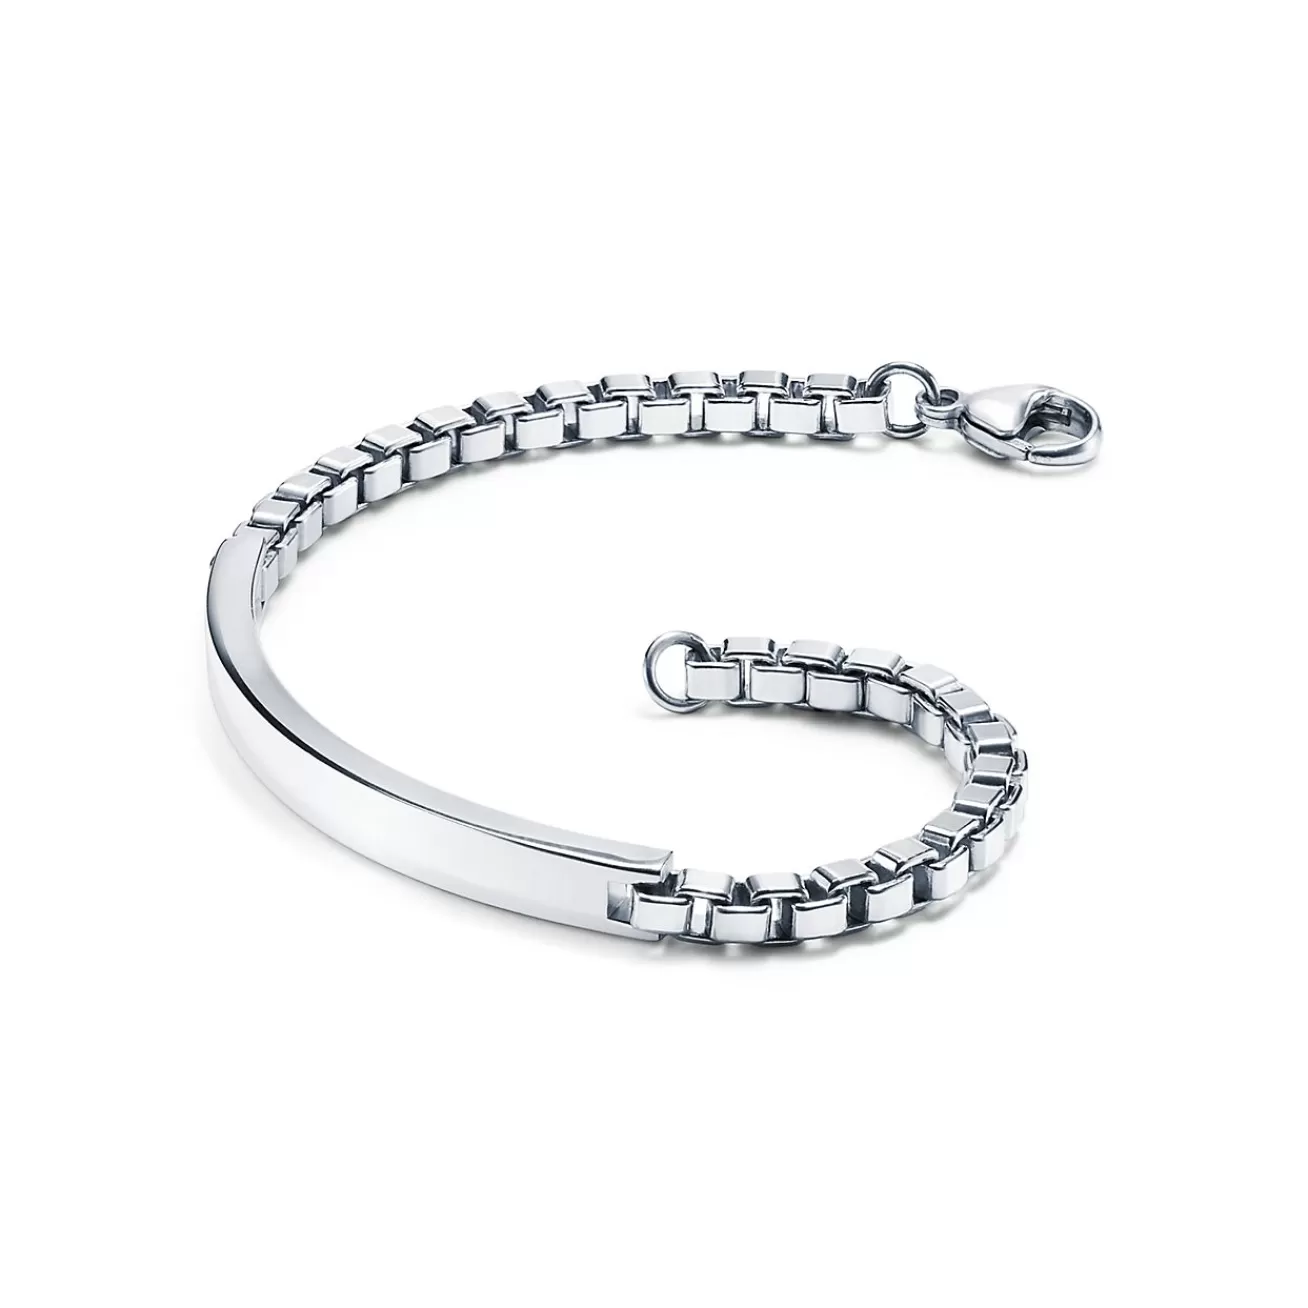 Tiffany & Co. Venetian Link I.D. men's bracelet in sterling silver. | ^ Bracelets | Men's Jewelry